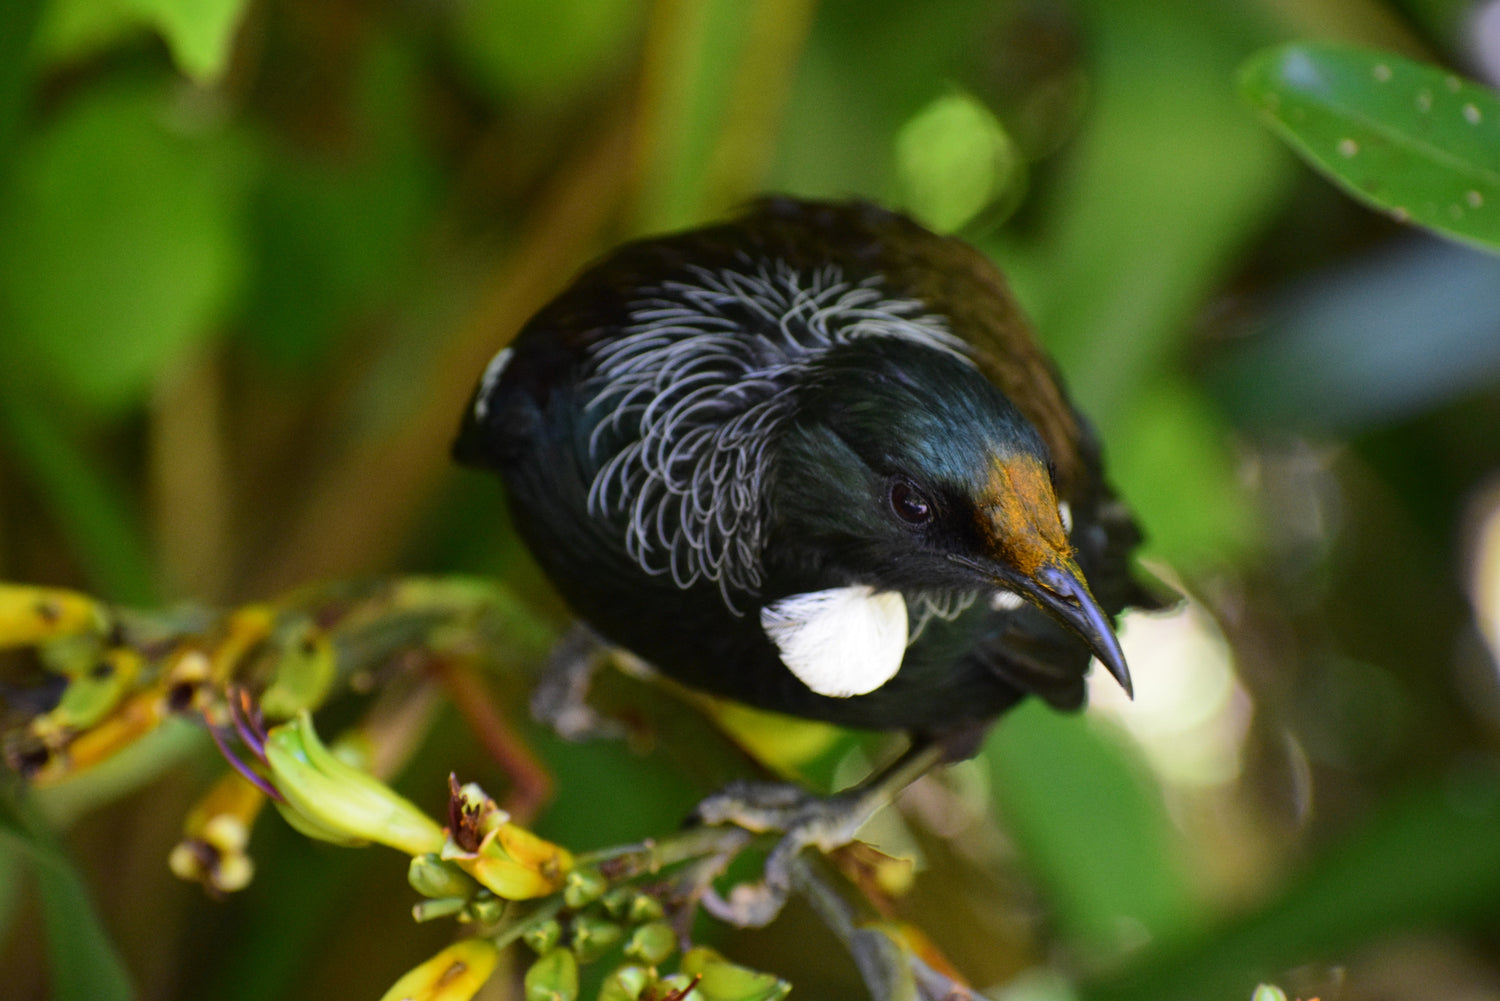 Native New Zealand tui bird